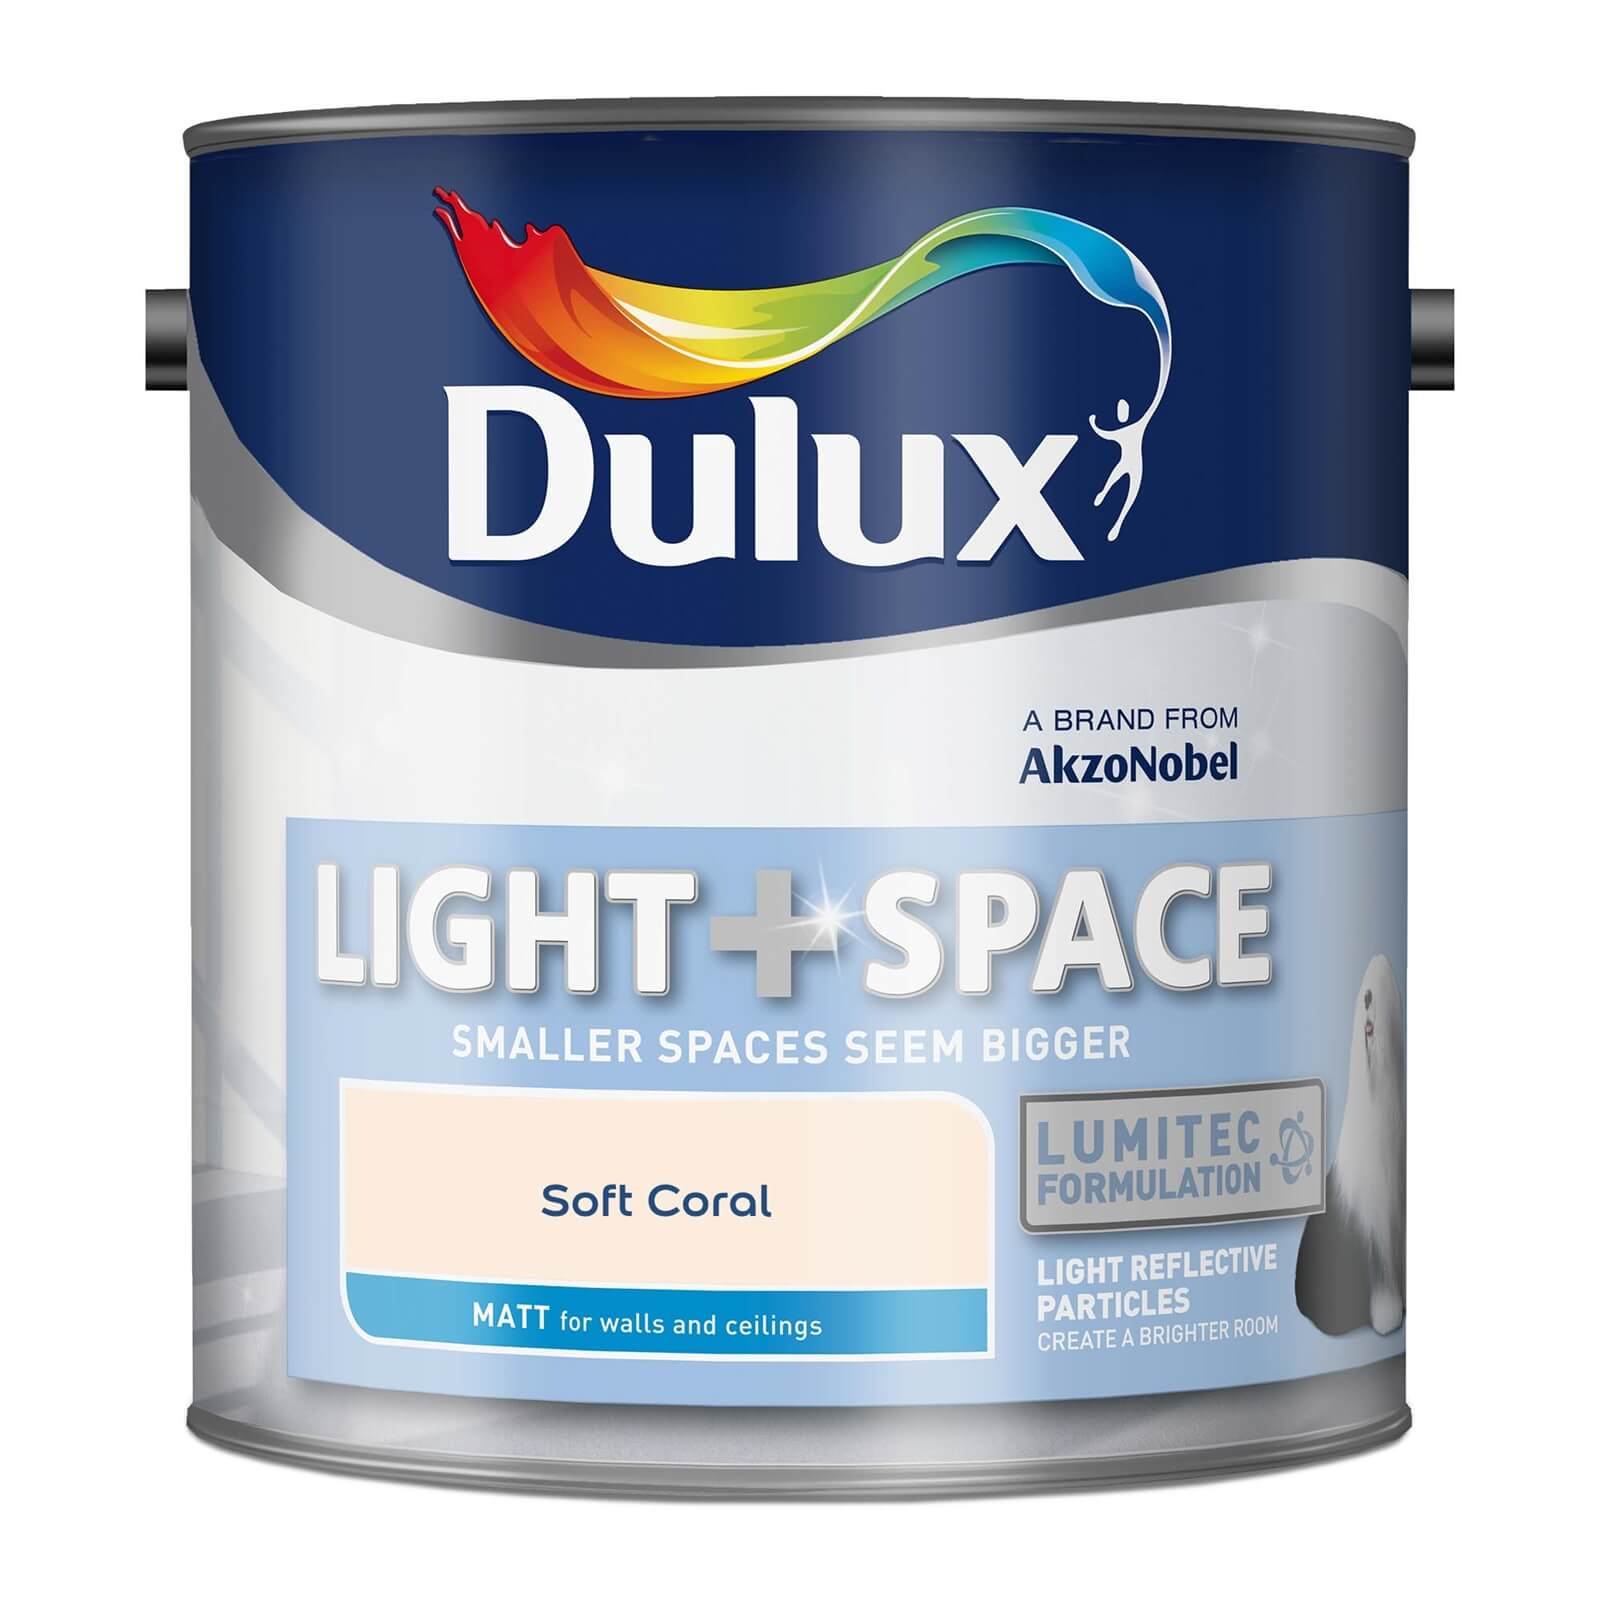 Dulux Light & Space Matt Emulsion Paint Soft Coral - 2.5L